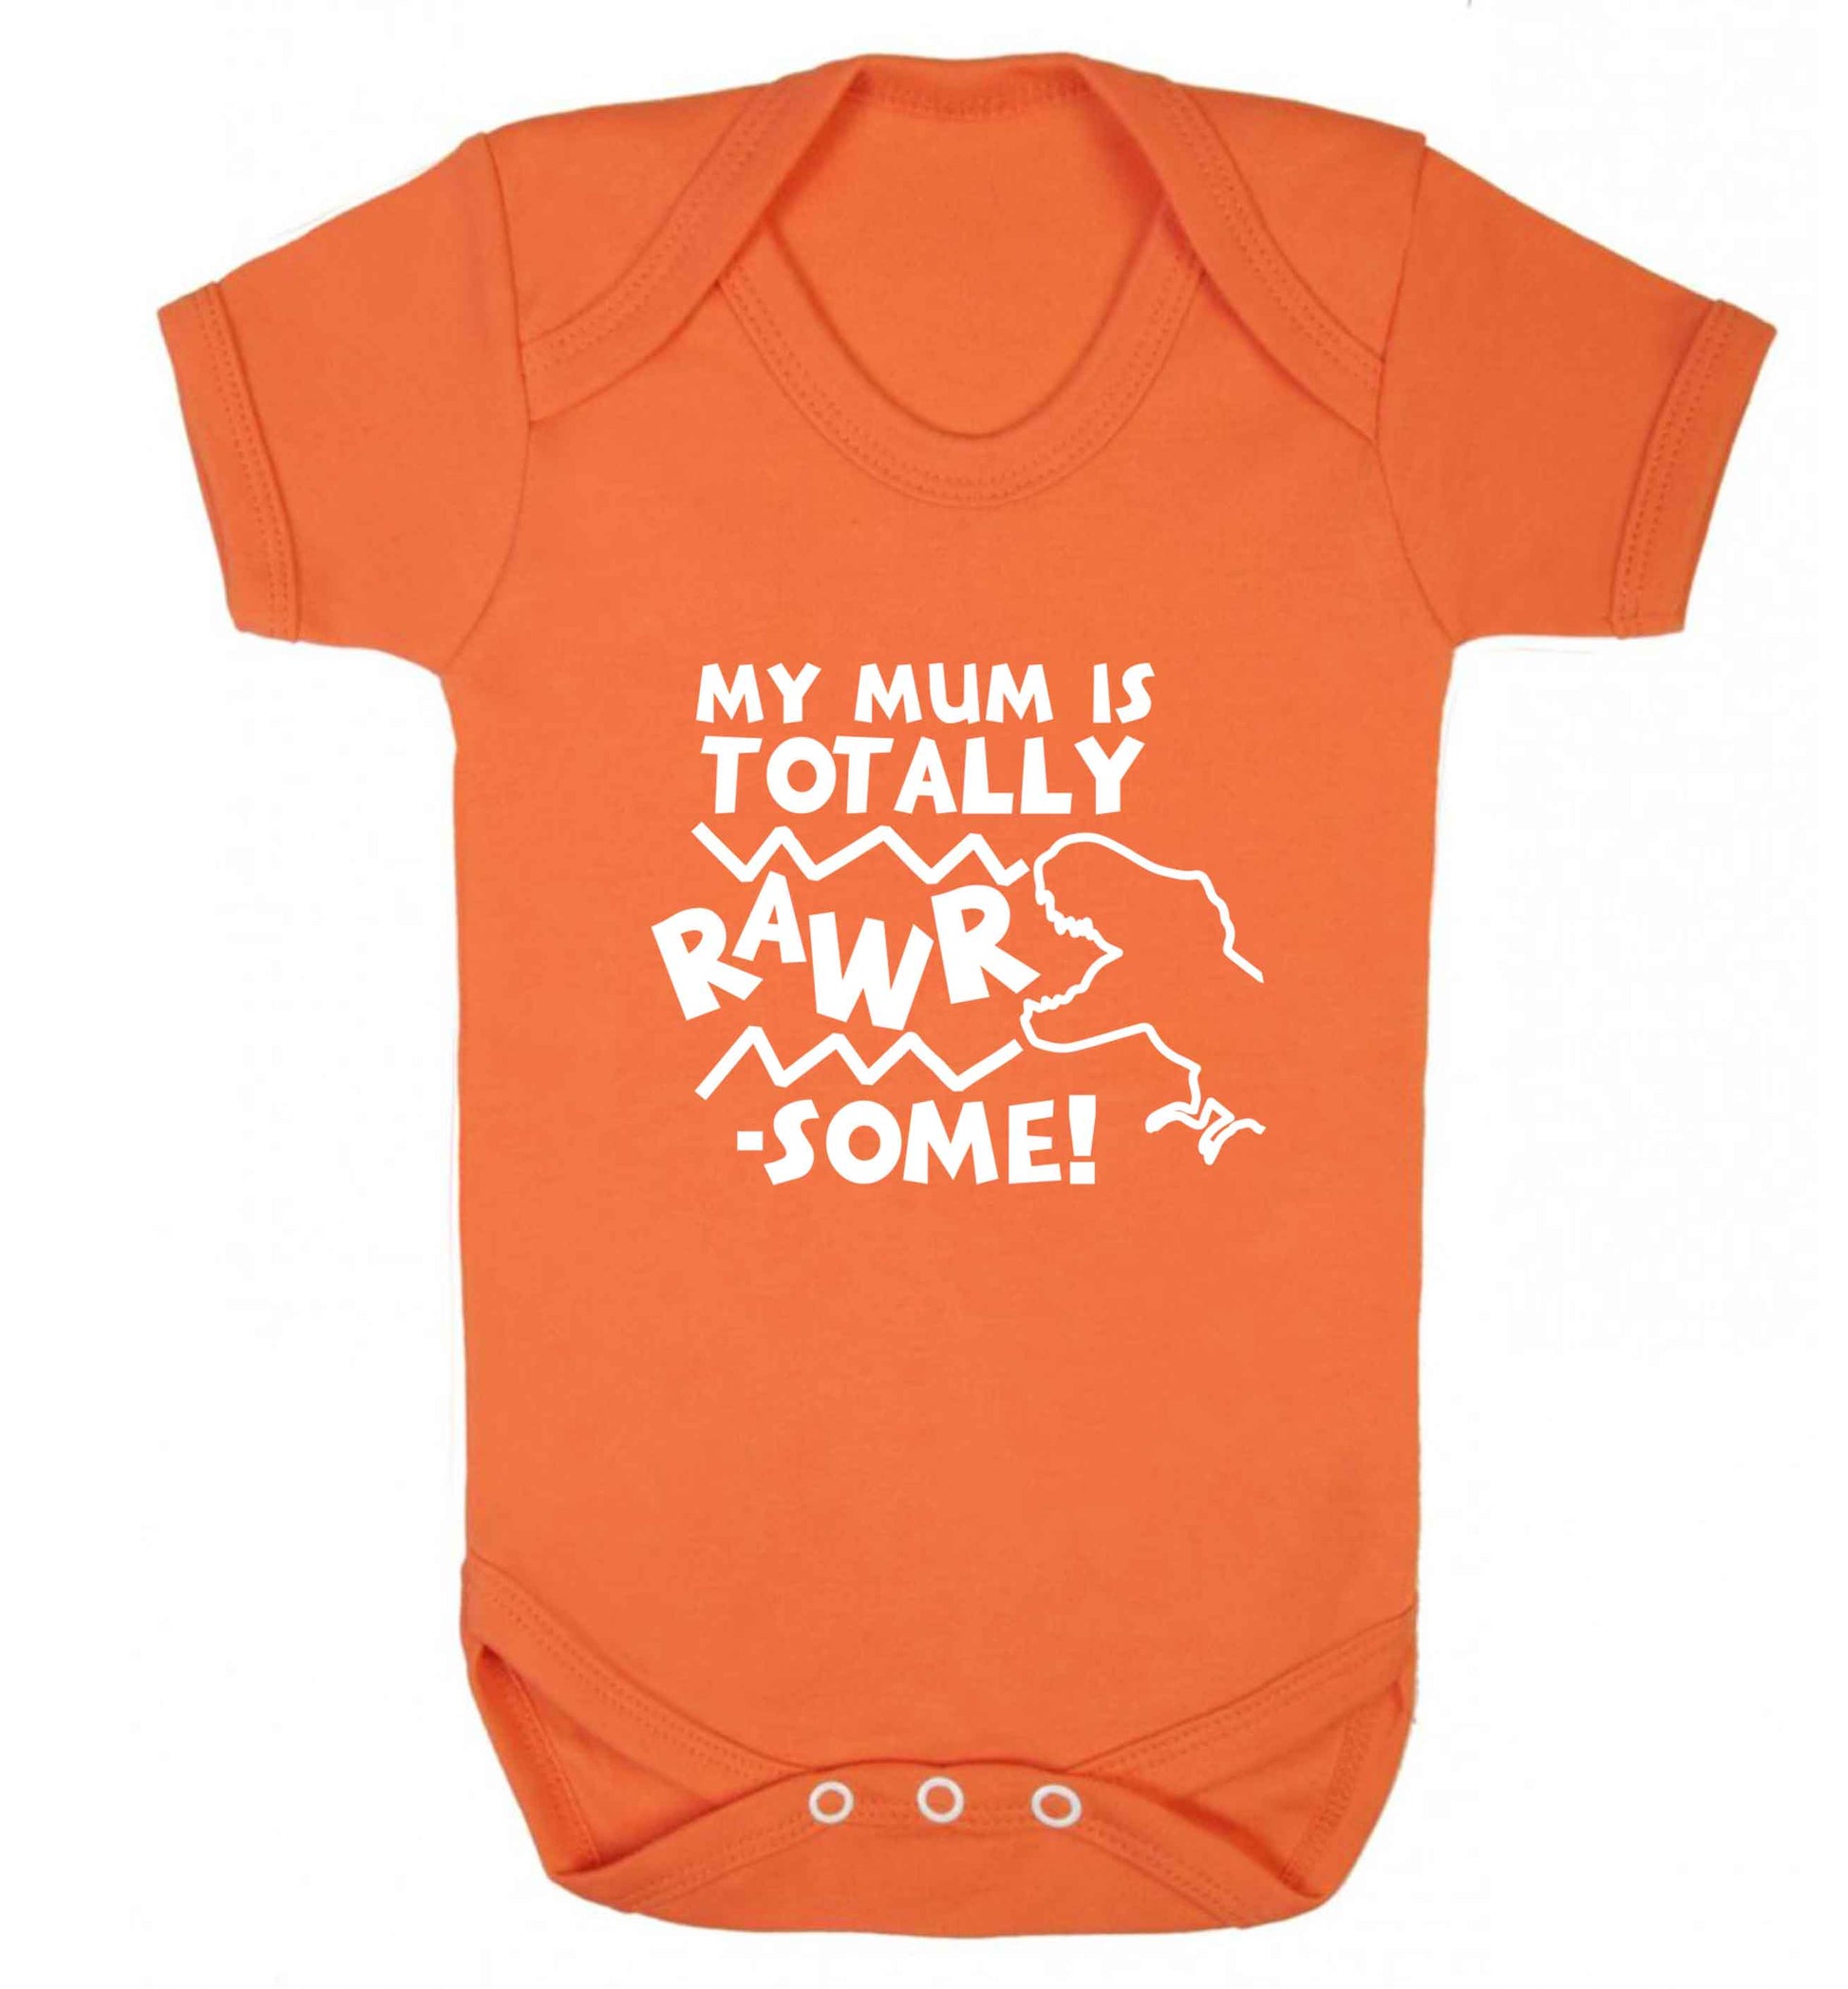 My mum is totally rawrsome baby vest orange 18-24 months